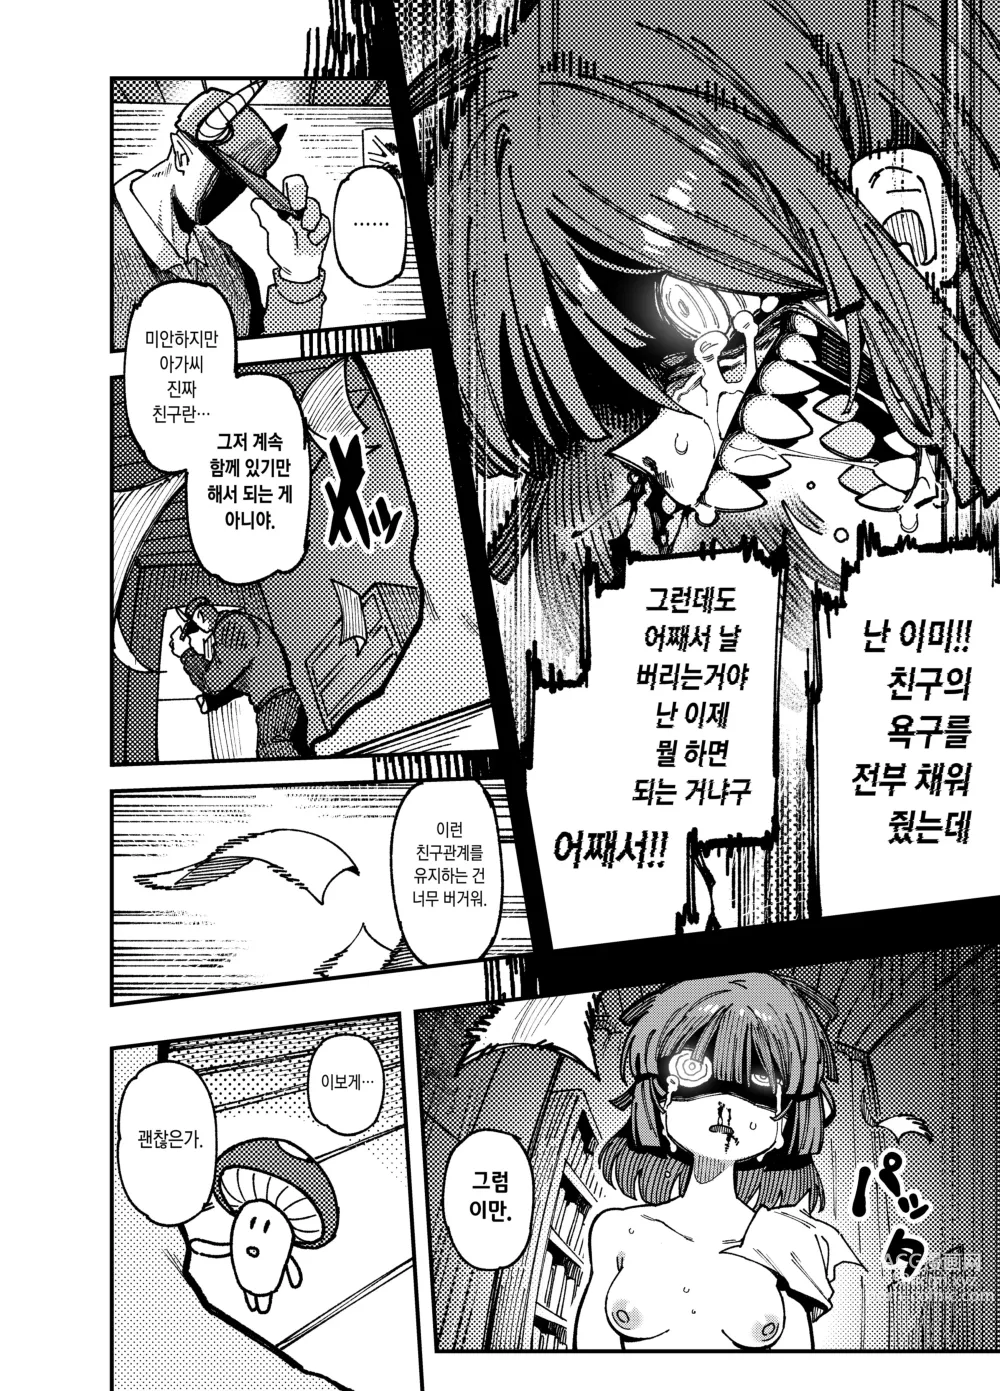 Page 51 of doujinshi 집이 너무 습해서 생긴 환각을 유발하는 버섯을 잘못 먹고 발정난 뒤의 이야기